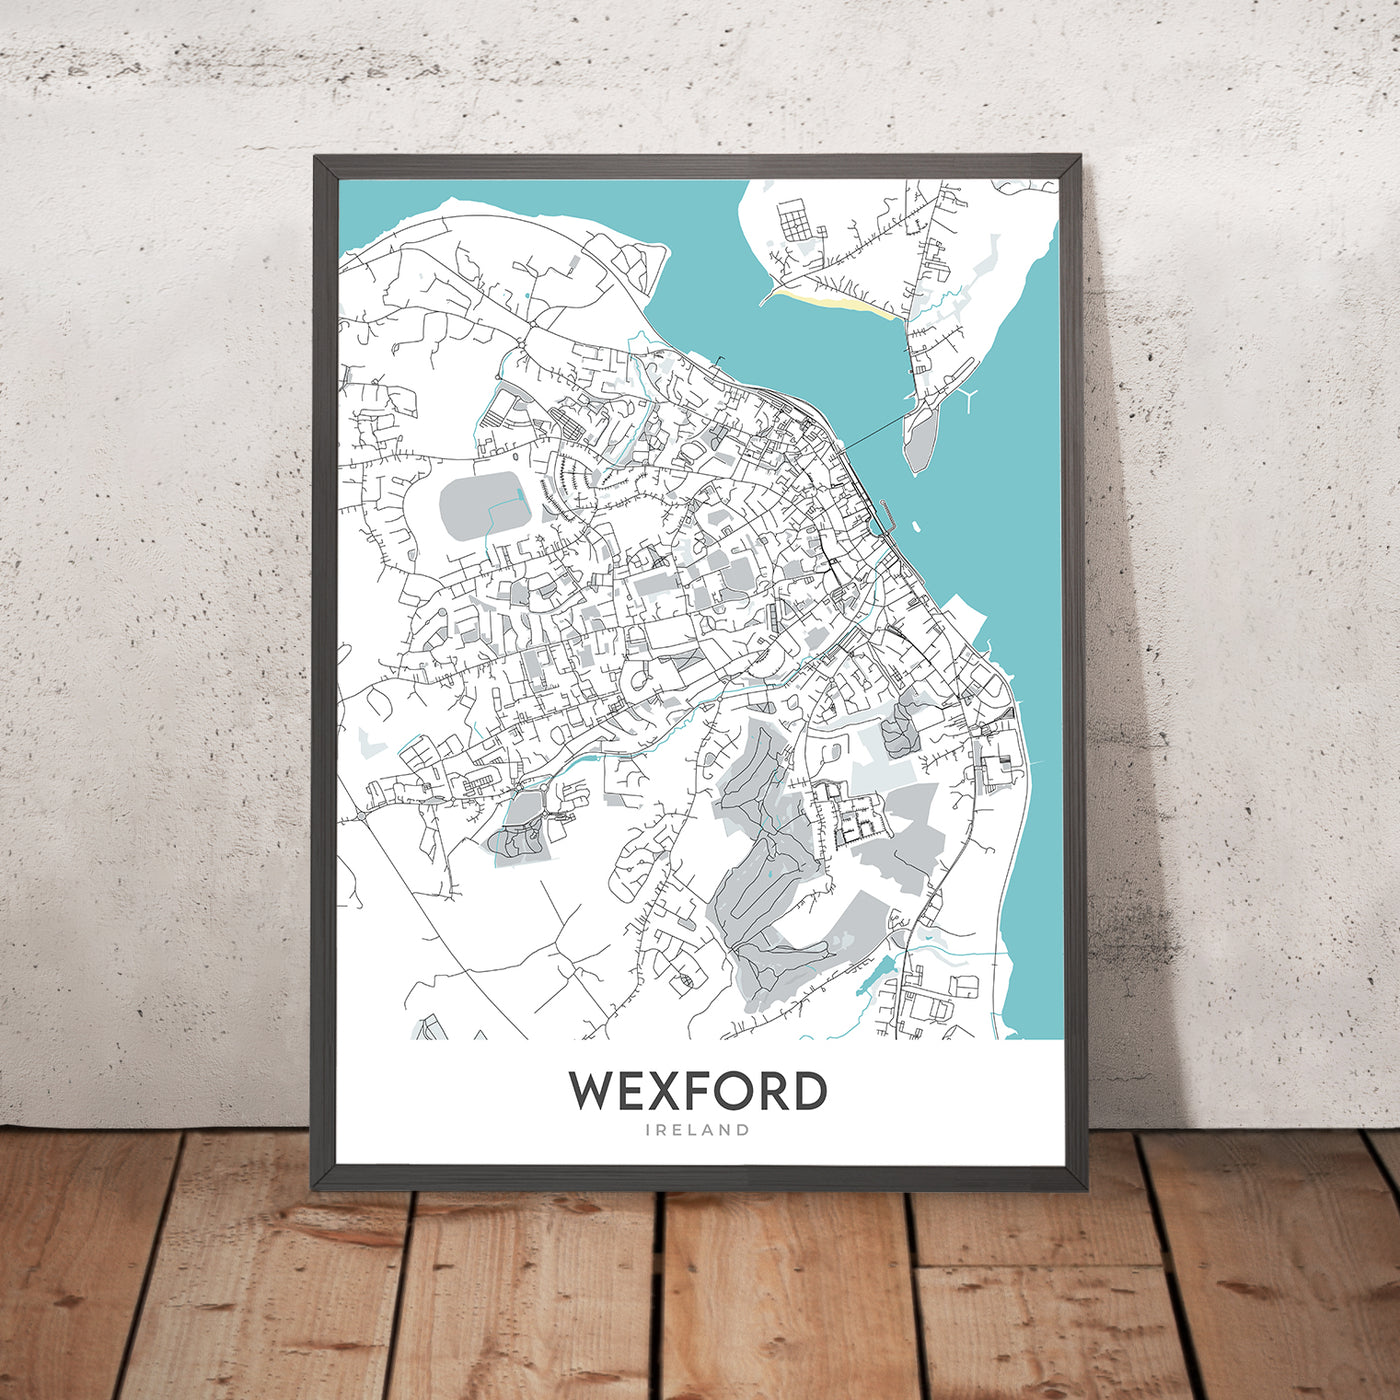 Mapa moderno de la ciudad de Wexford, Irlanda: ciudad de Wexford, castillo de Enniscorthy, playa de Curracloe, faro de Hook, parque del patrimonio nacional irlandés